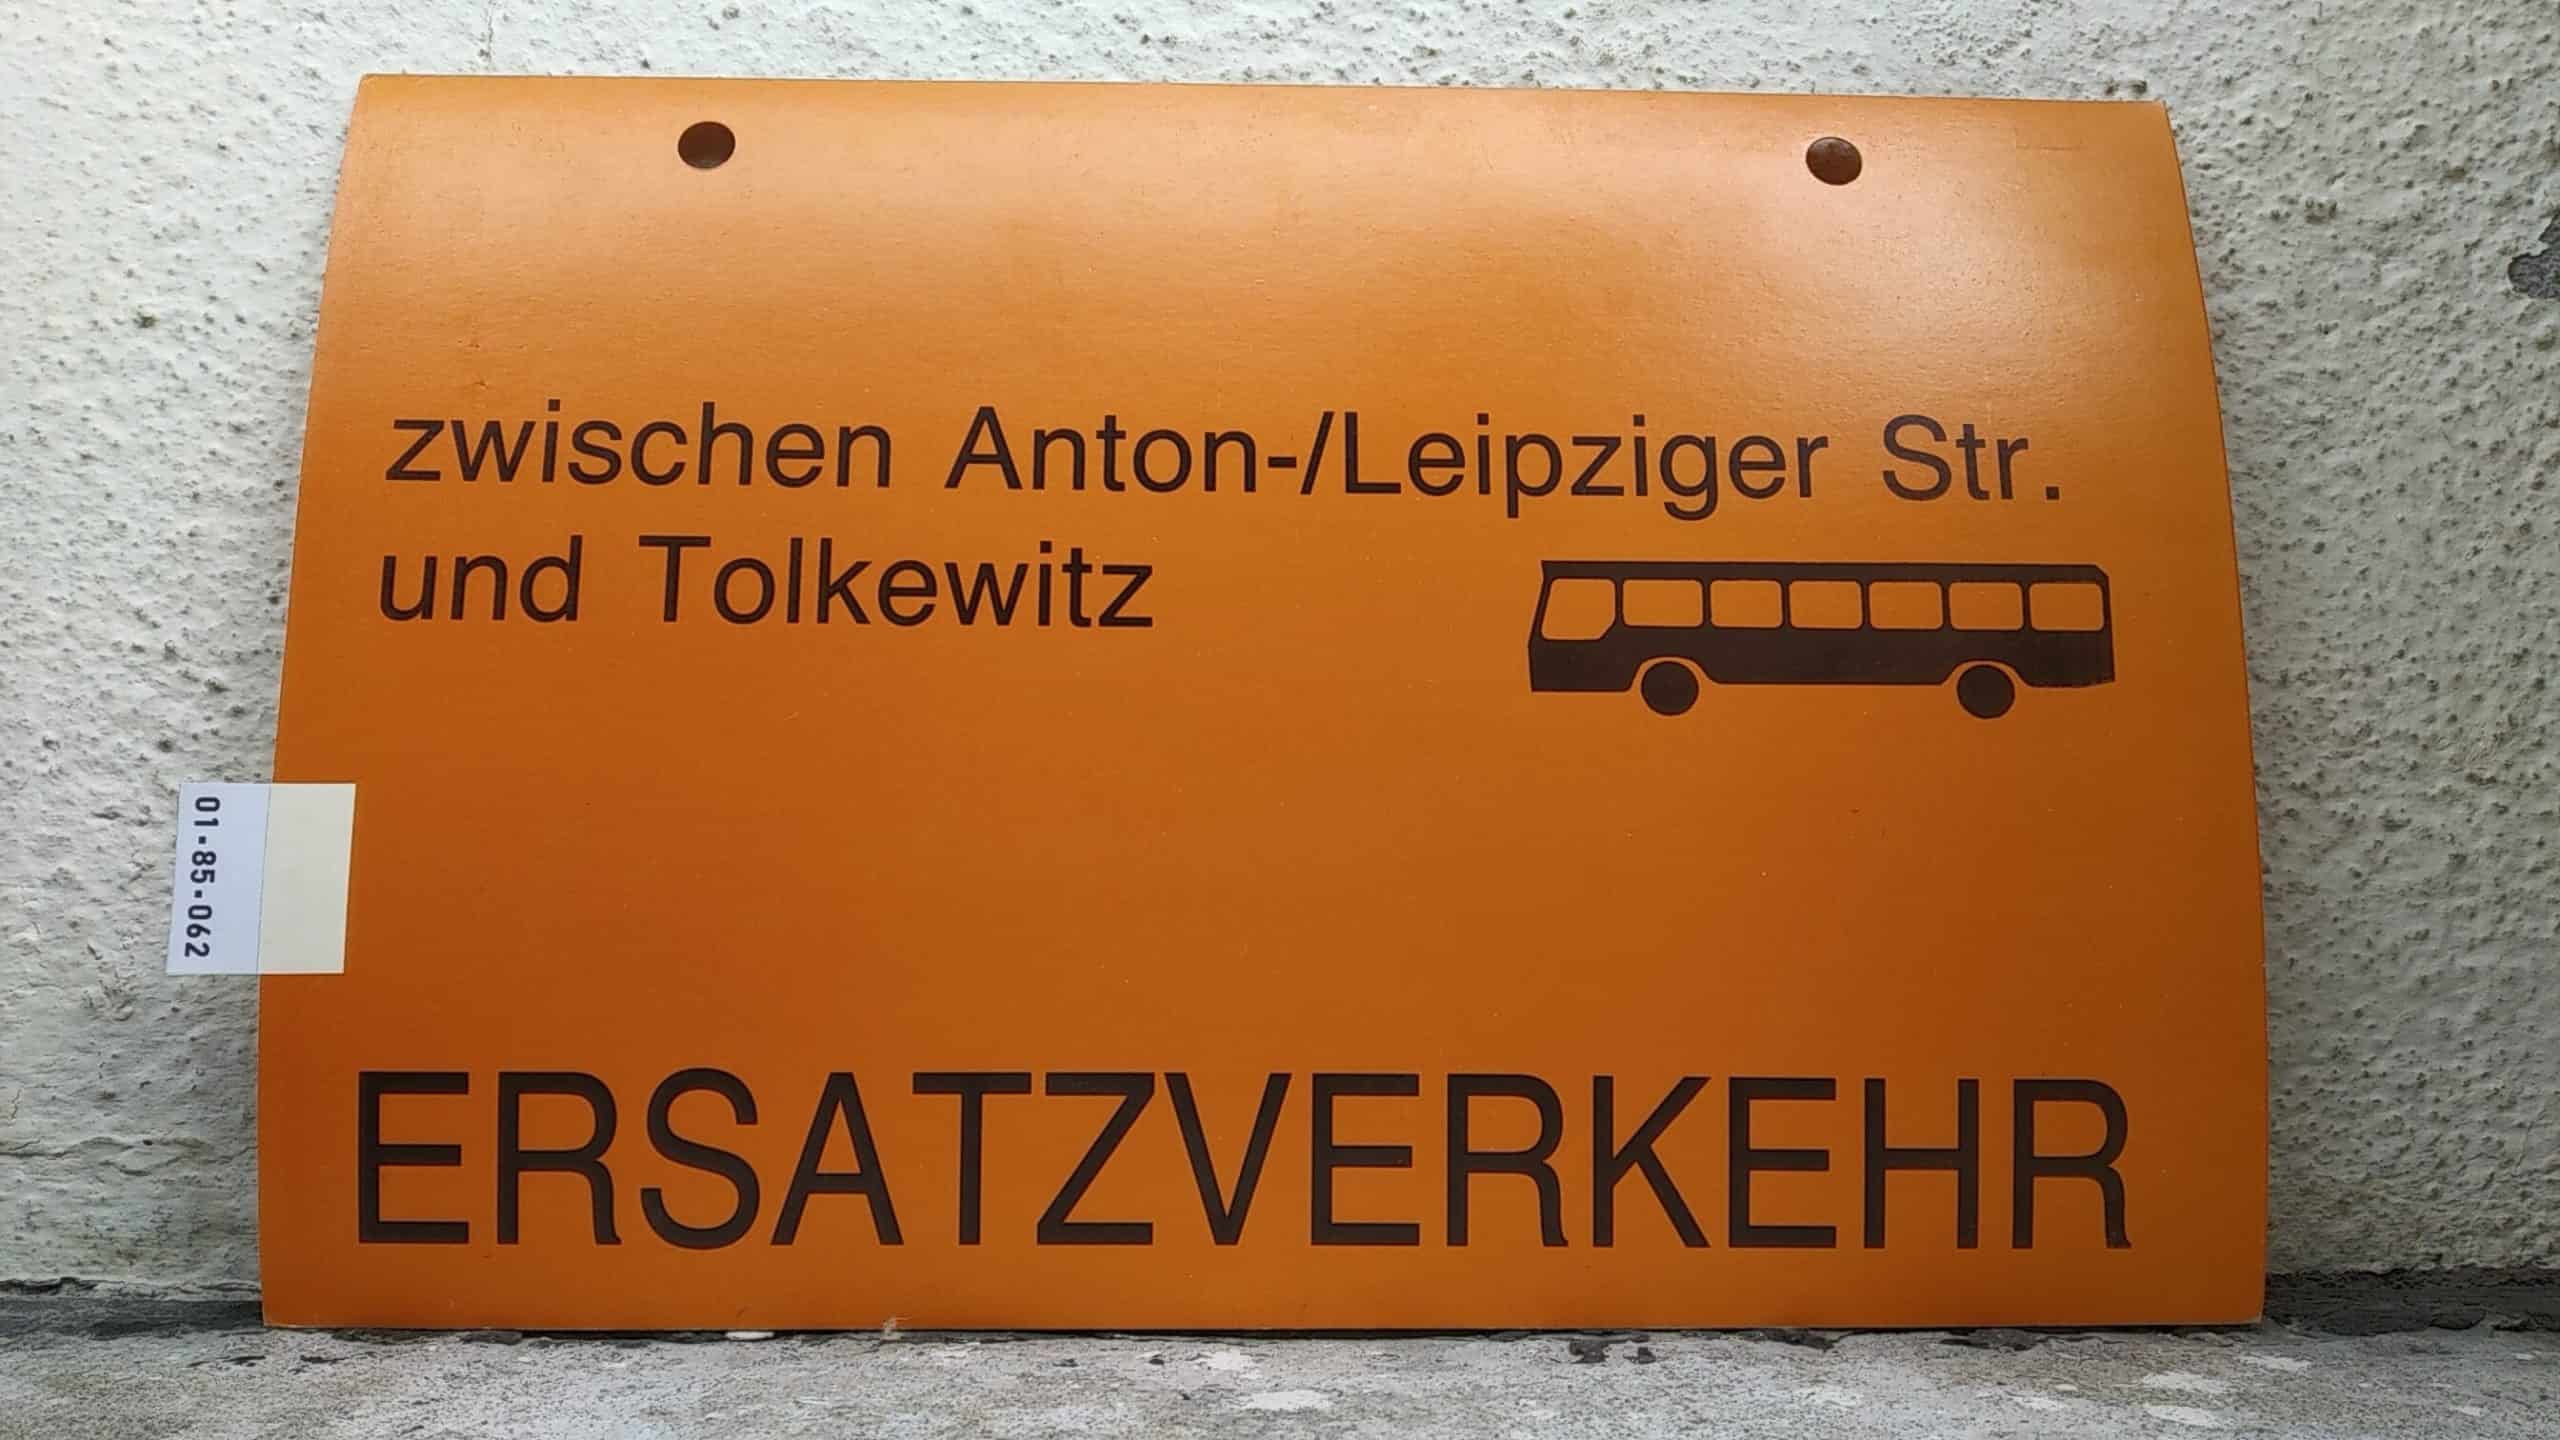 Ein seltenes Straßenbahn-Umleitungsschild aus Dresden: zwischen Anton-/Leipziger Str. und Tolkewitz [Bus neu] ERSATZVERKEHR